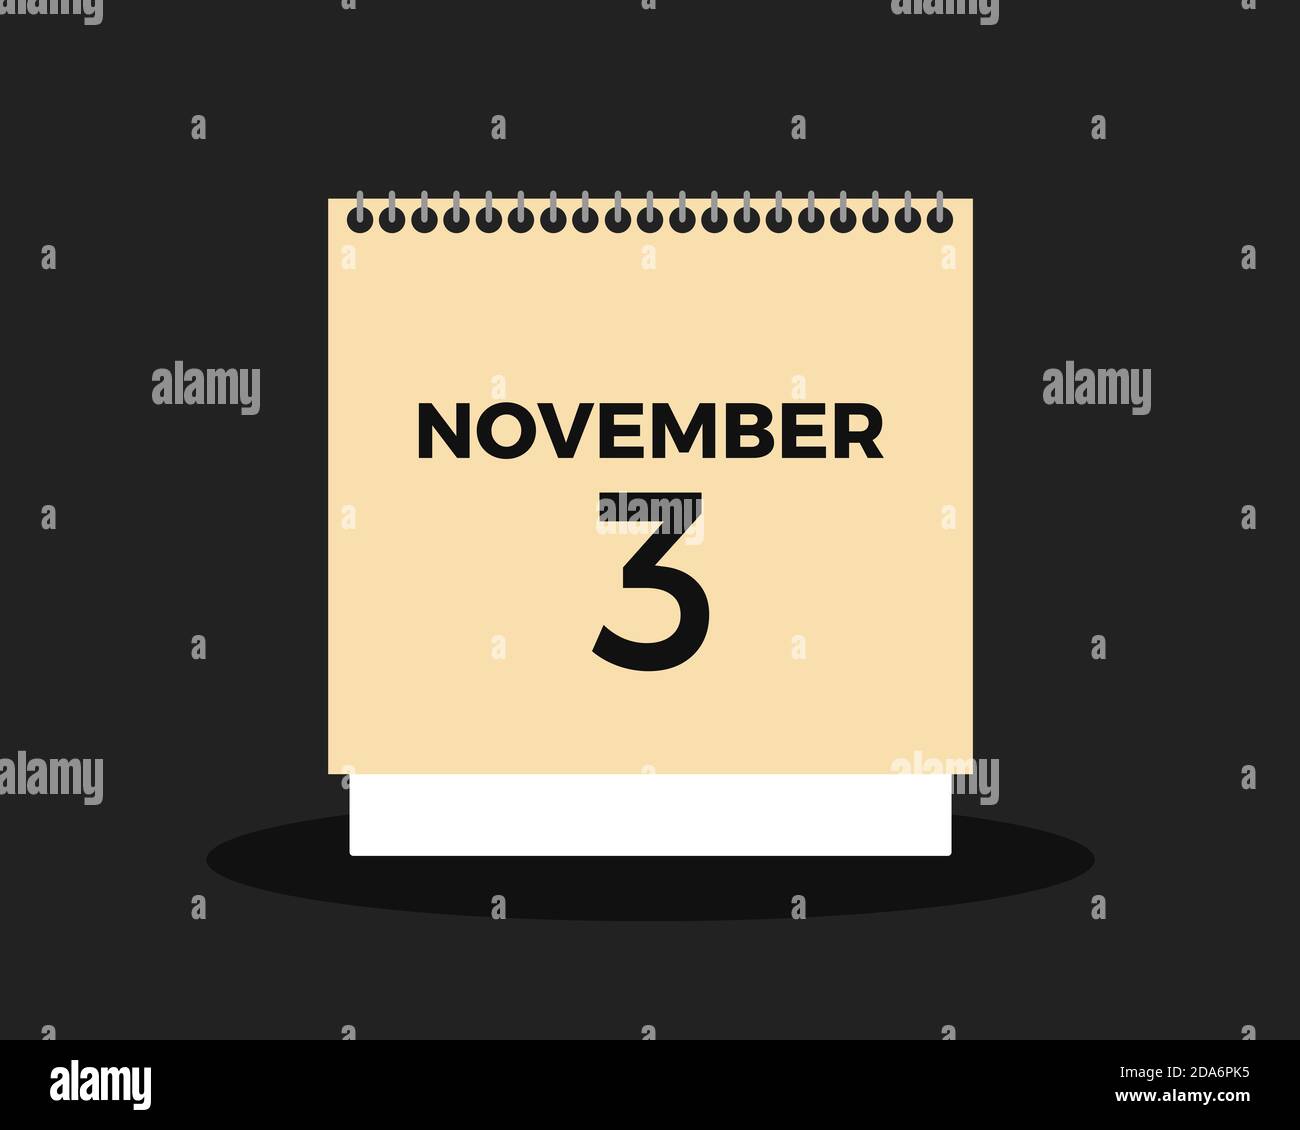 Calendario e giorno elettrone - calendario mostra la data di novembre 3 - giorno delle elezioni per eleggere il nuovo presidente degli Stati Uniti Degli Stati Uniti negli eletti presidenziali Foto Stock